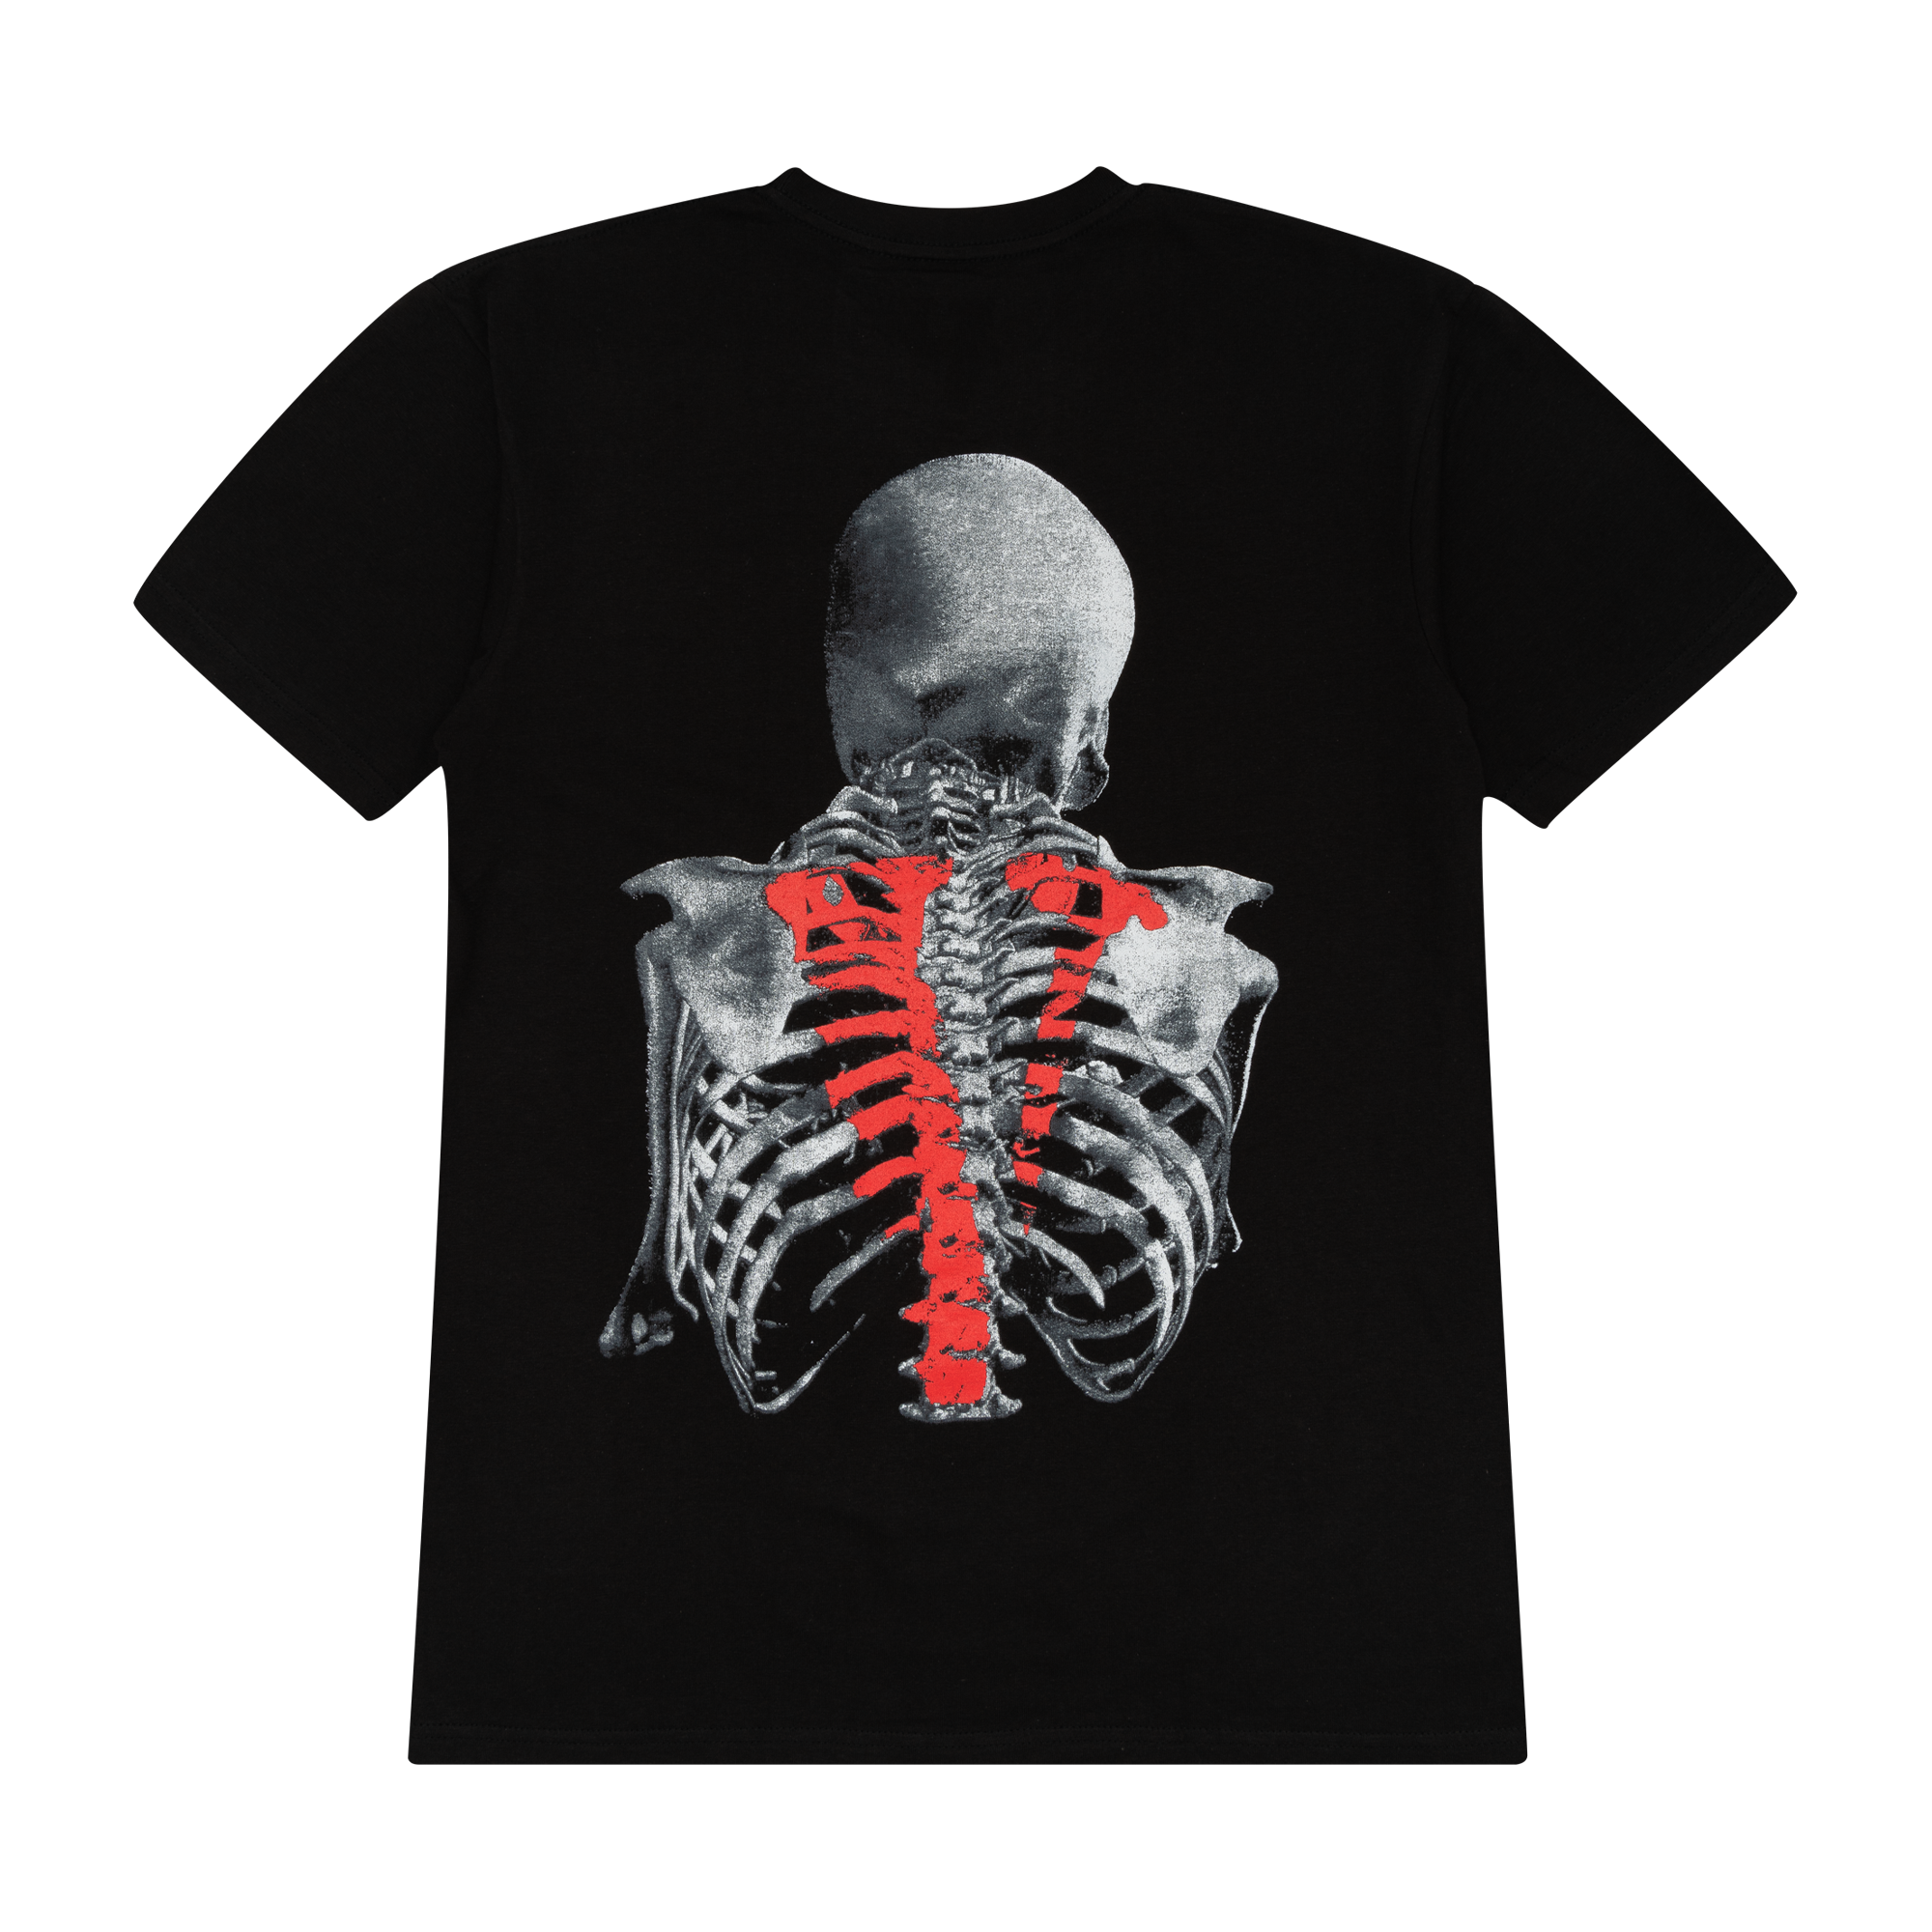 Vlone x Never Broke Again Bones T-Shirt Black-PLUS